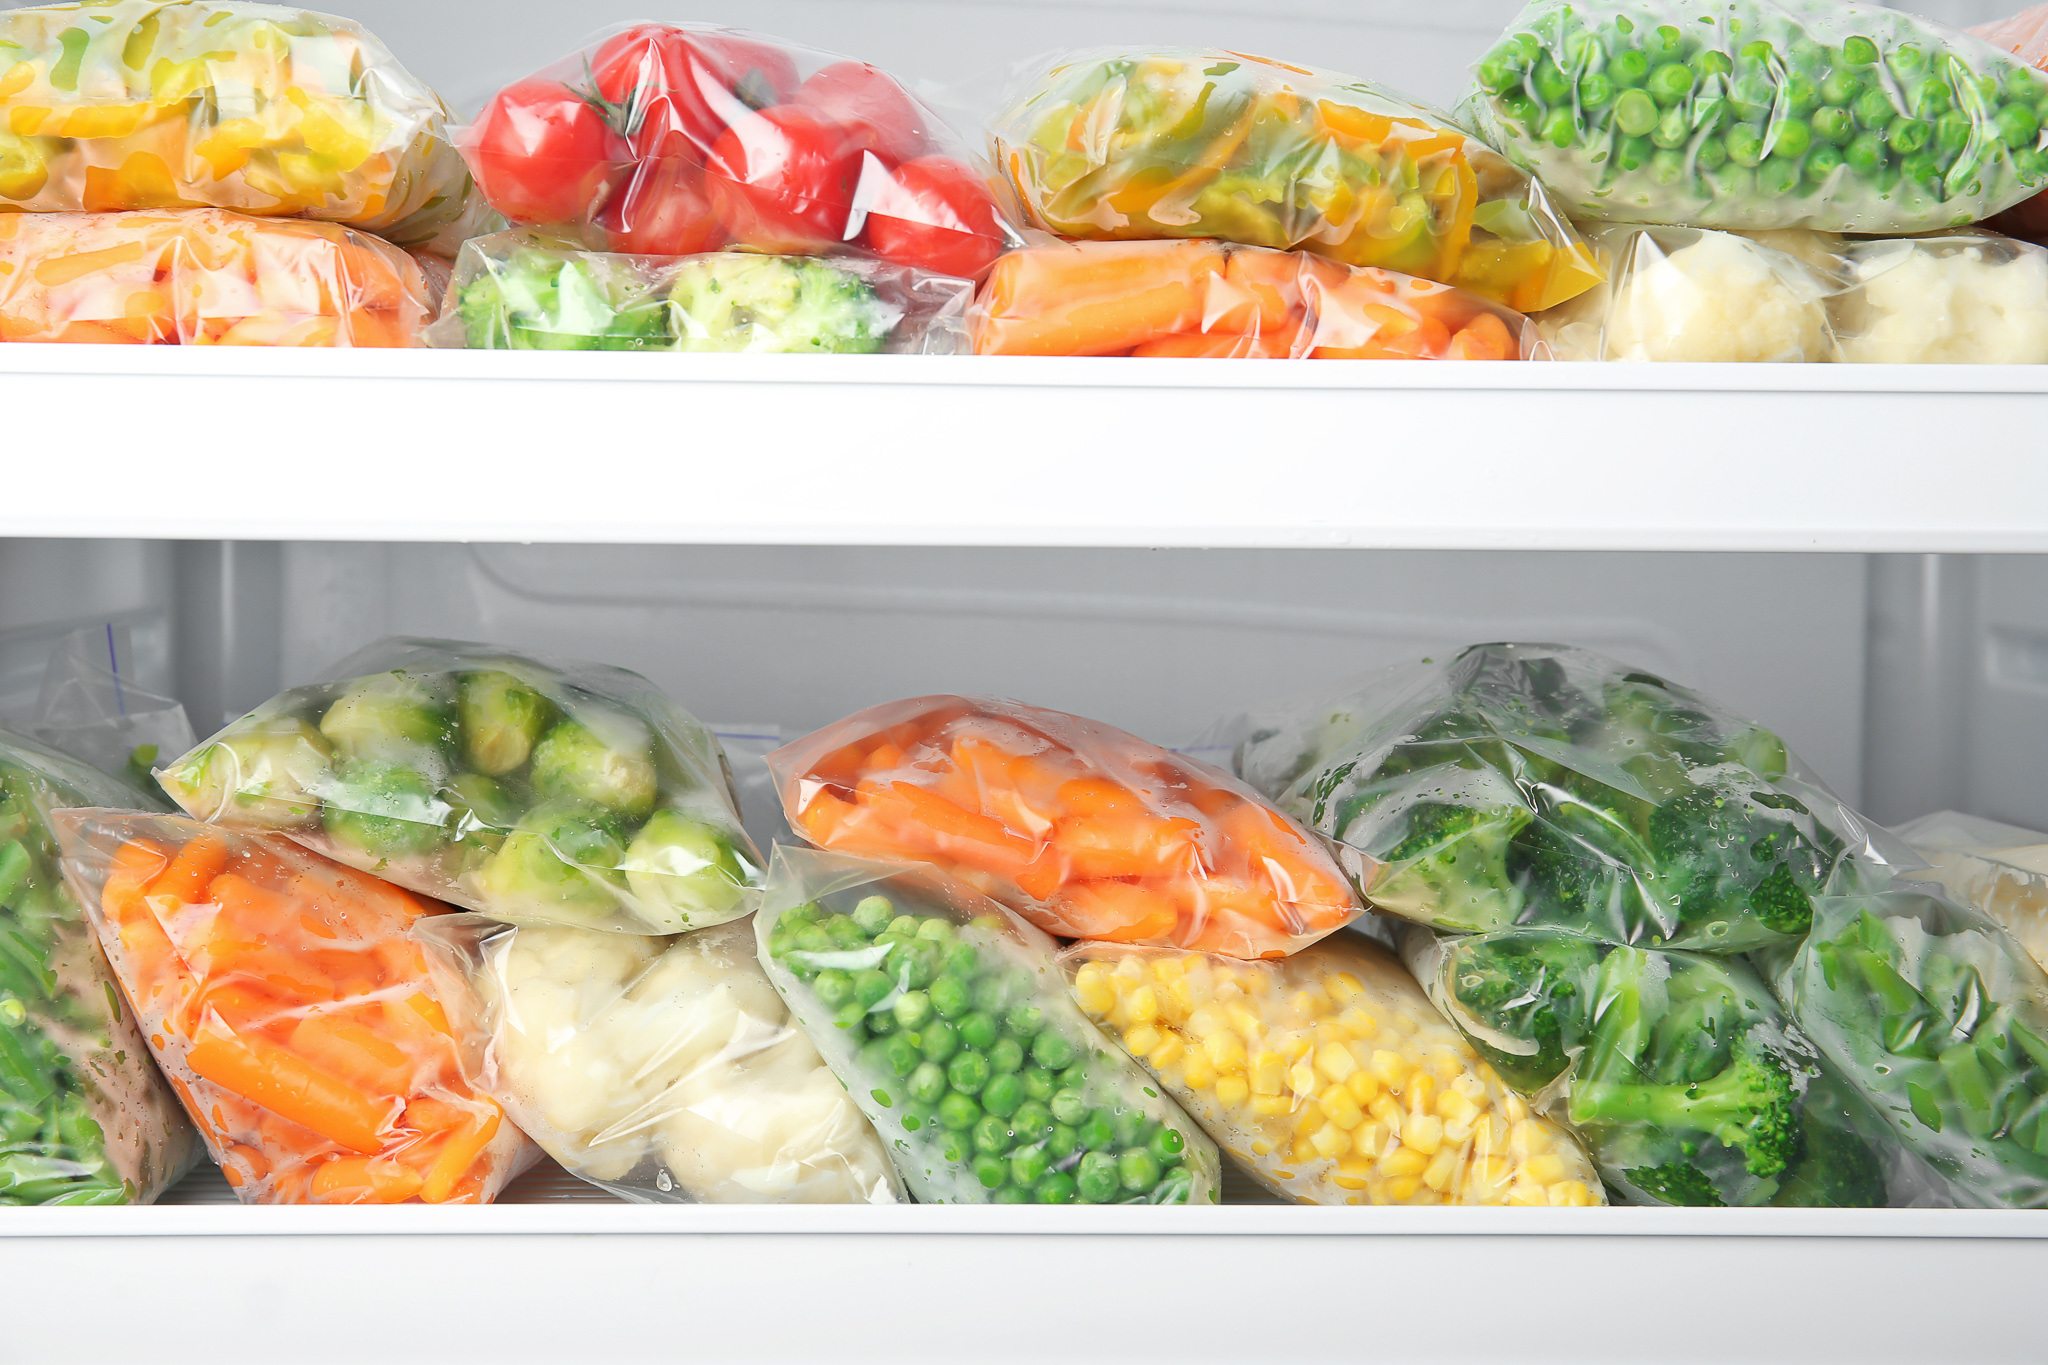 Ребенок в морозилке мужское. Хранение продуктов в холодильнике. Морозилки с овощами в магазинах. Контейнеры для овощей и фруктов в холодильниках с картинками. Разделитель в холодильник для овощей и фруктов.